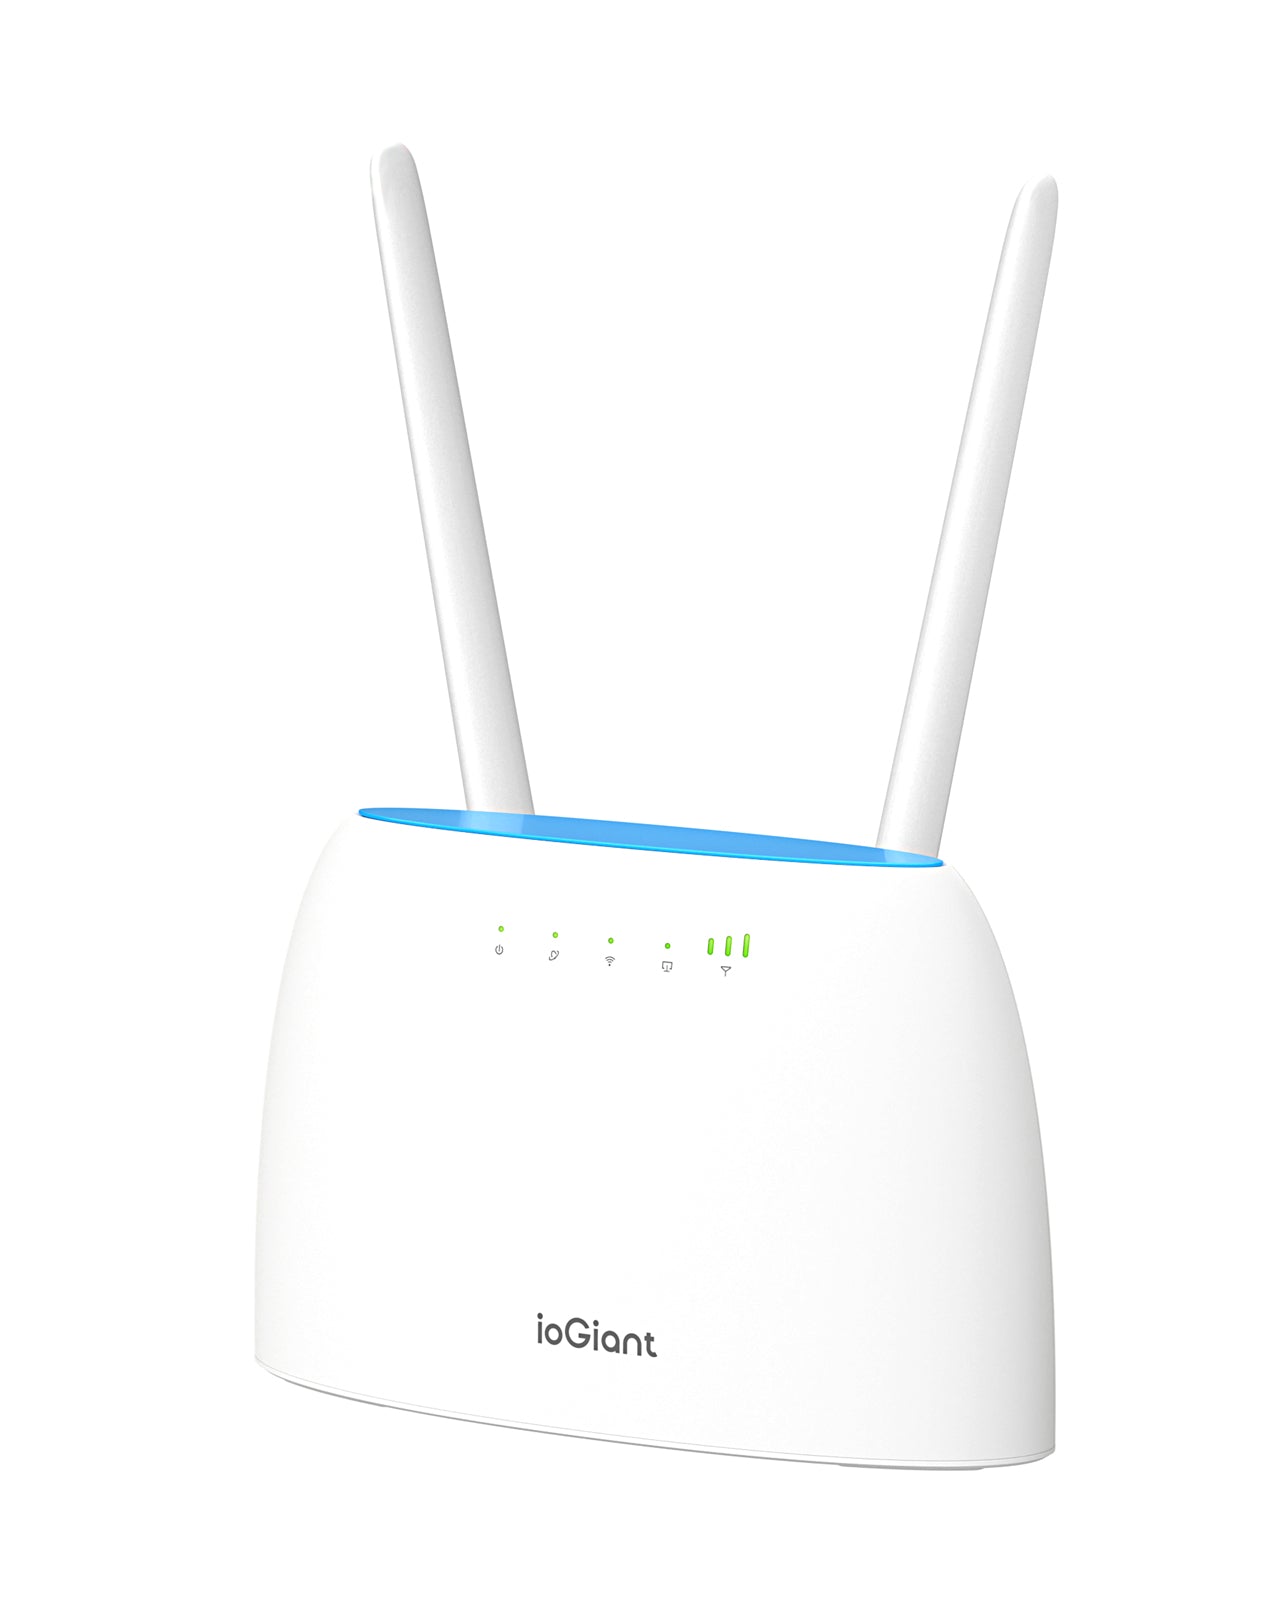 ioGiant Box 4G, Routeur 4G SIM LTE WiFi AC 1200 Mbps, Boîtier 4G Wi-Fi avec  modem Carte SIM pour tout Opérateur, Connectez jusqu'à 64 Appareils, 2 antennes amovibles, Routeur WiFi 4G